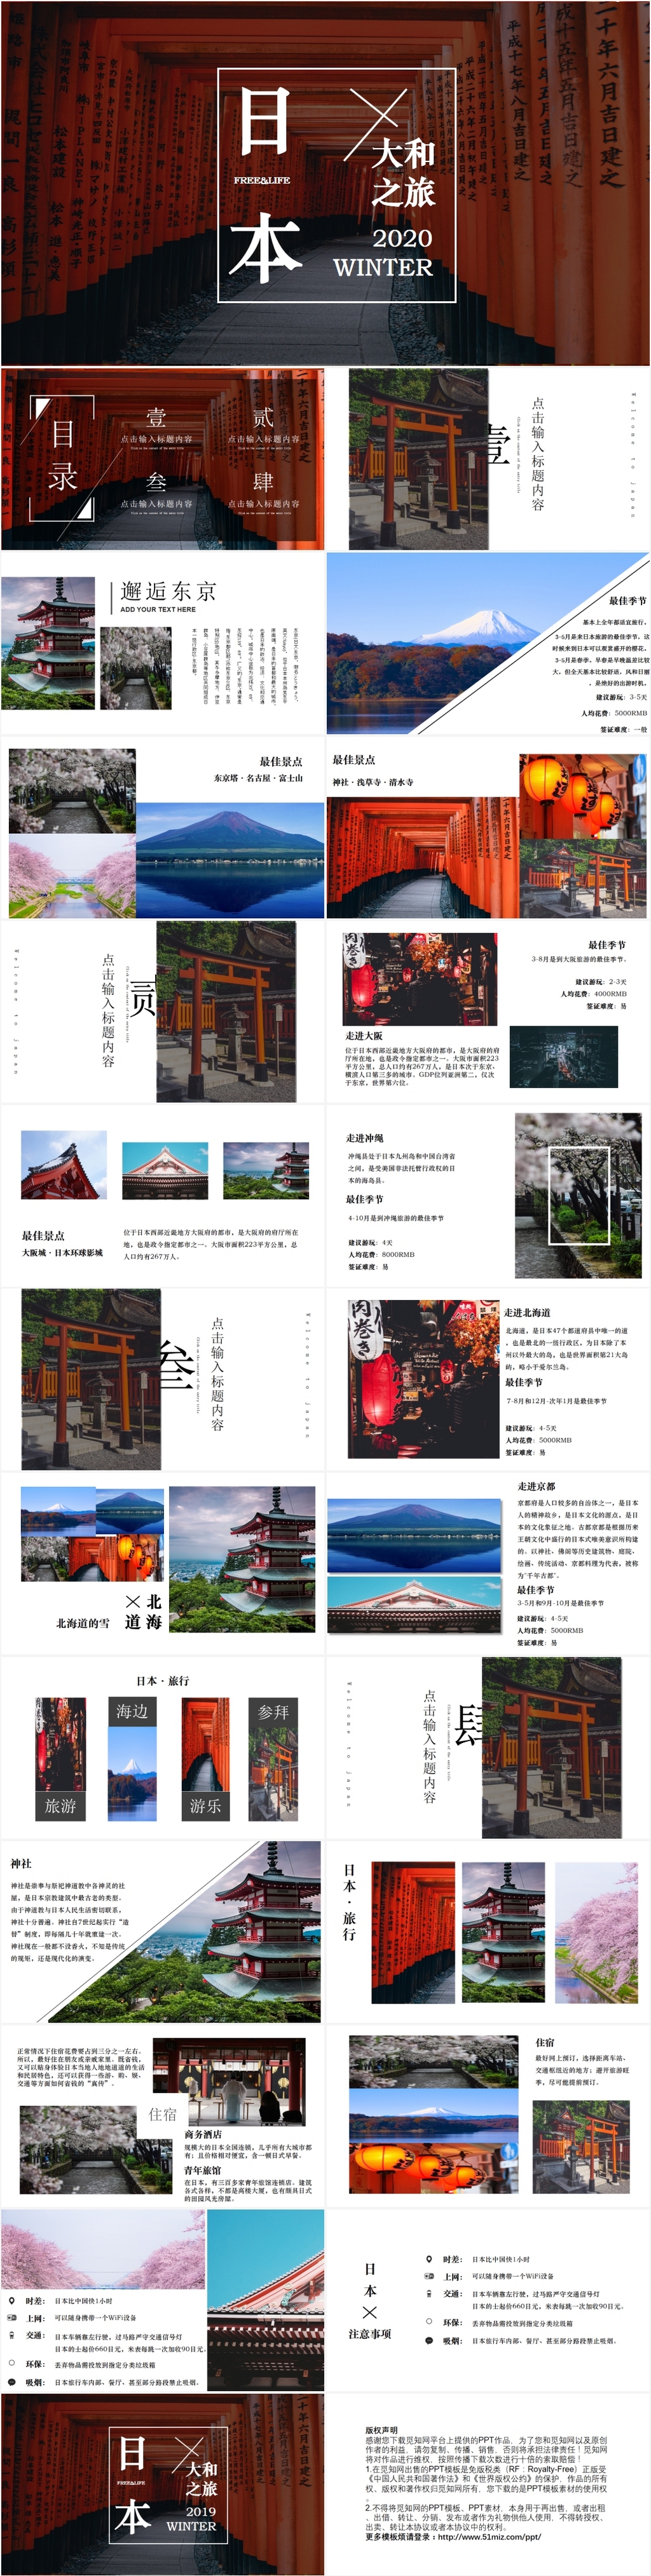 简约通用大气日本旅游文化宣传推广图册相册PPT模板